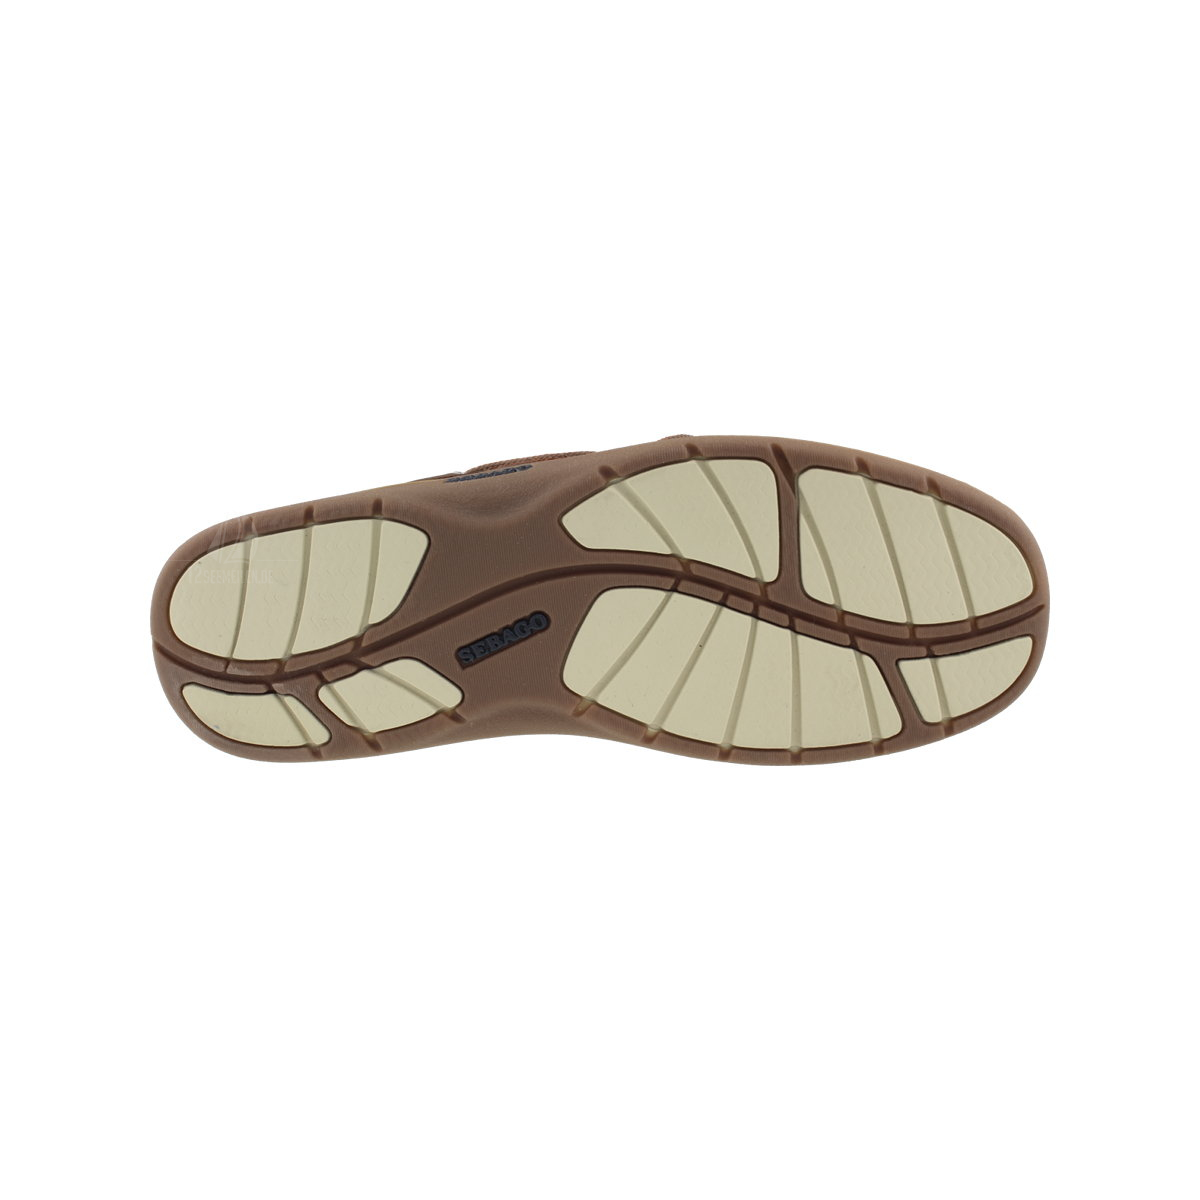 Sebago Clovehitch II bootschoen heren walnut leather eu 41.5 (us 8)